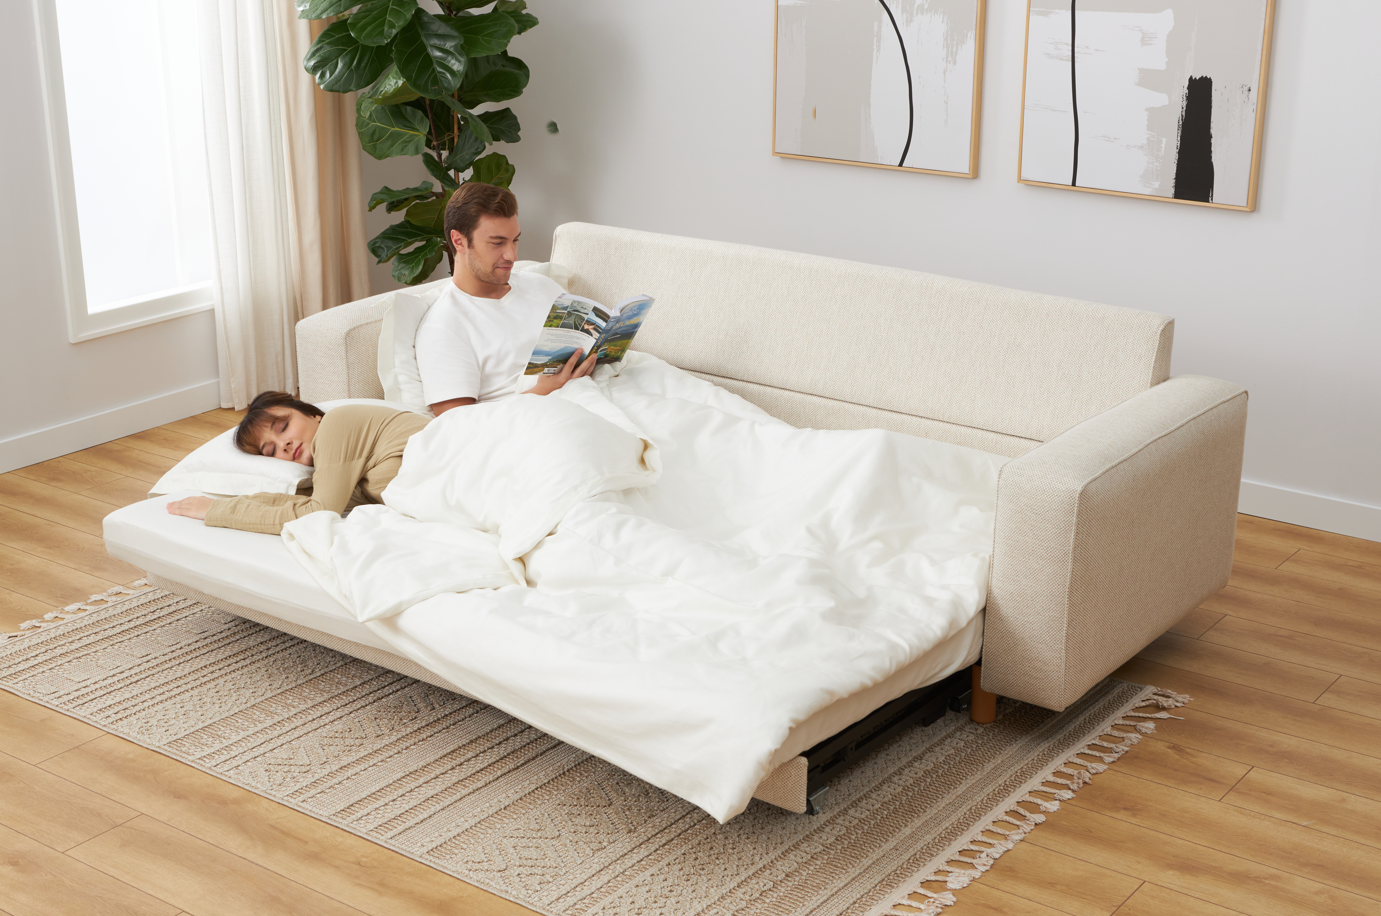 Losa yataklı koltukta iki kişi rahatça uyuyabilir